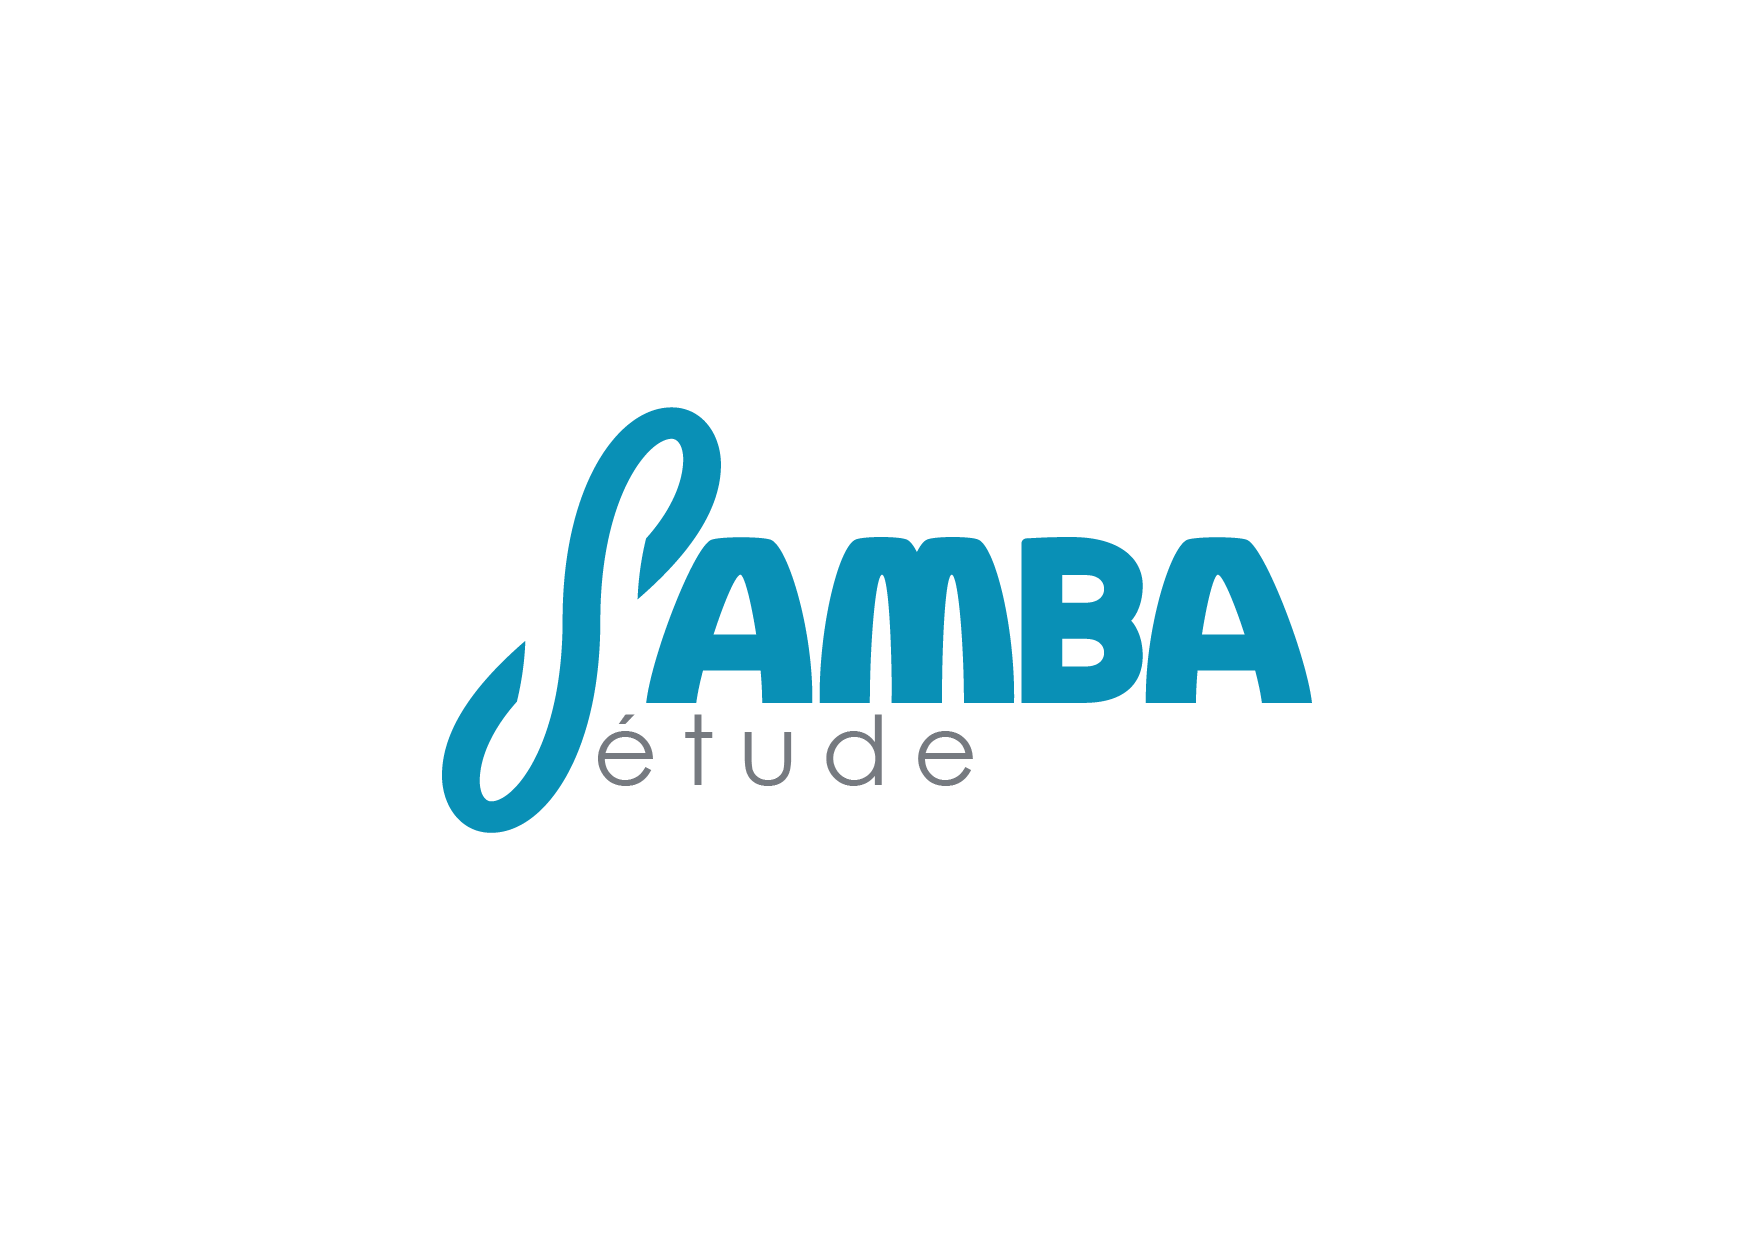 Samba Logo - Ben Fligans : illustrateur motion designer freelance basé à Lille ...